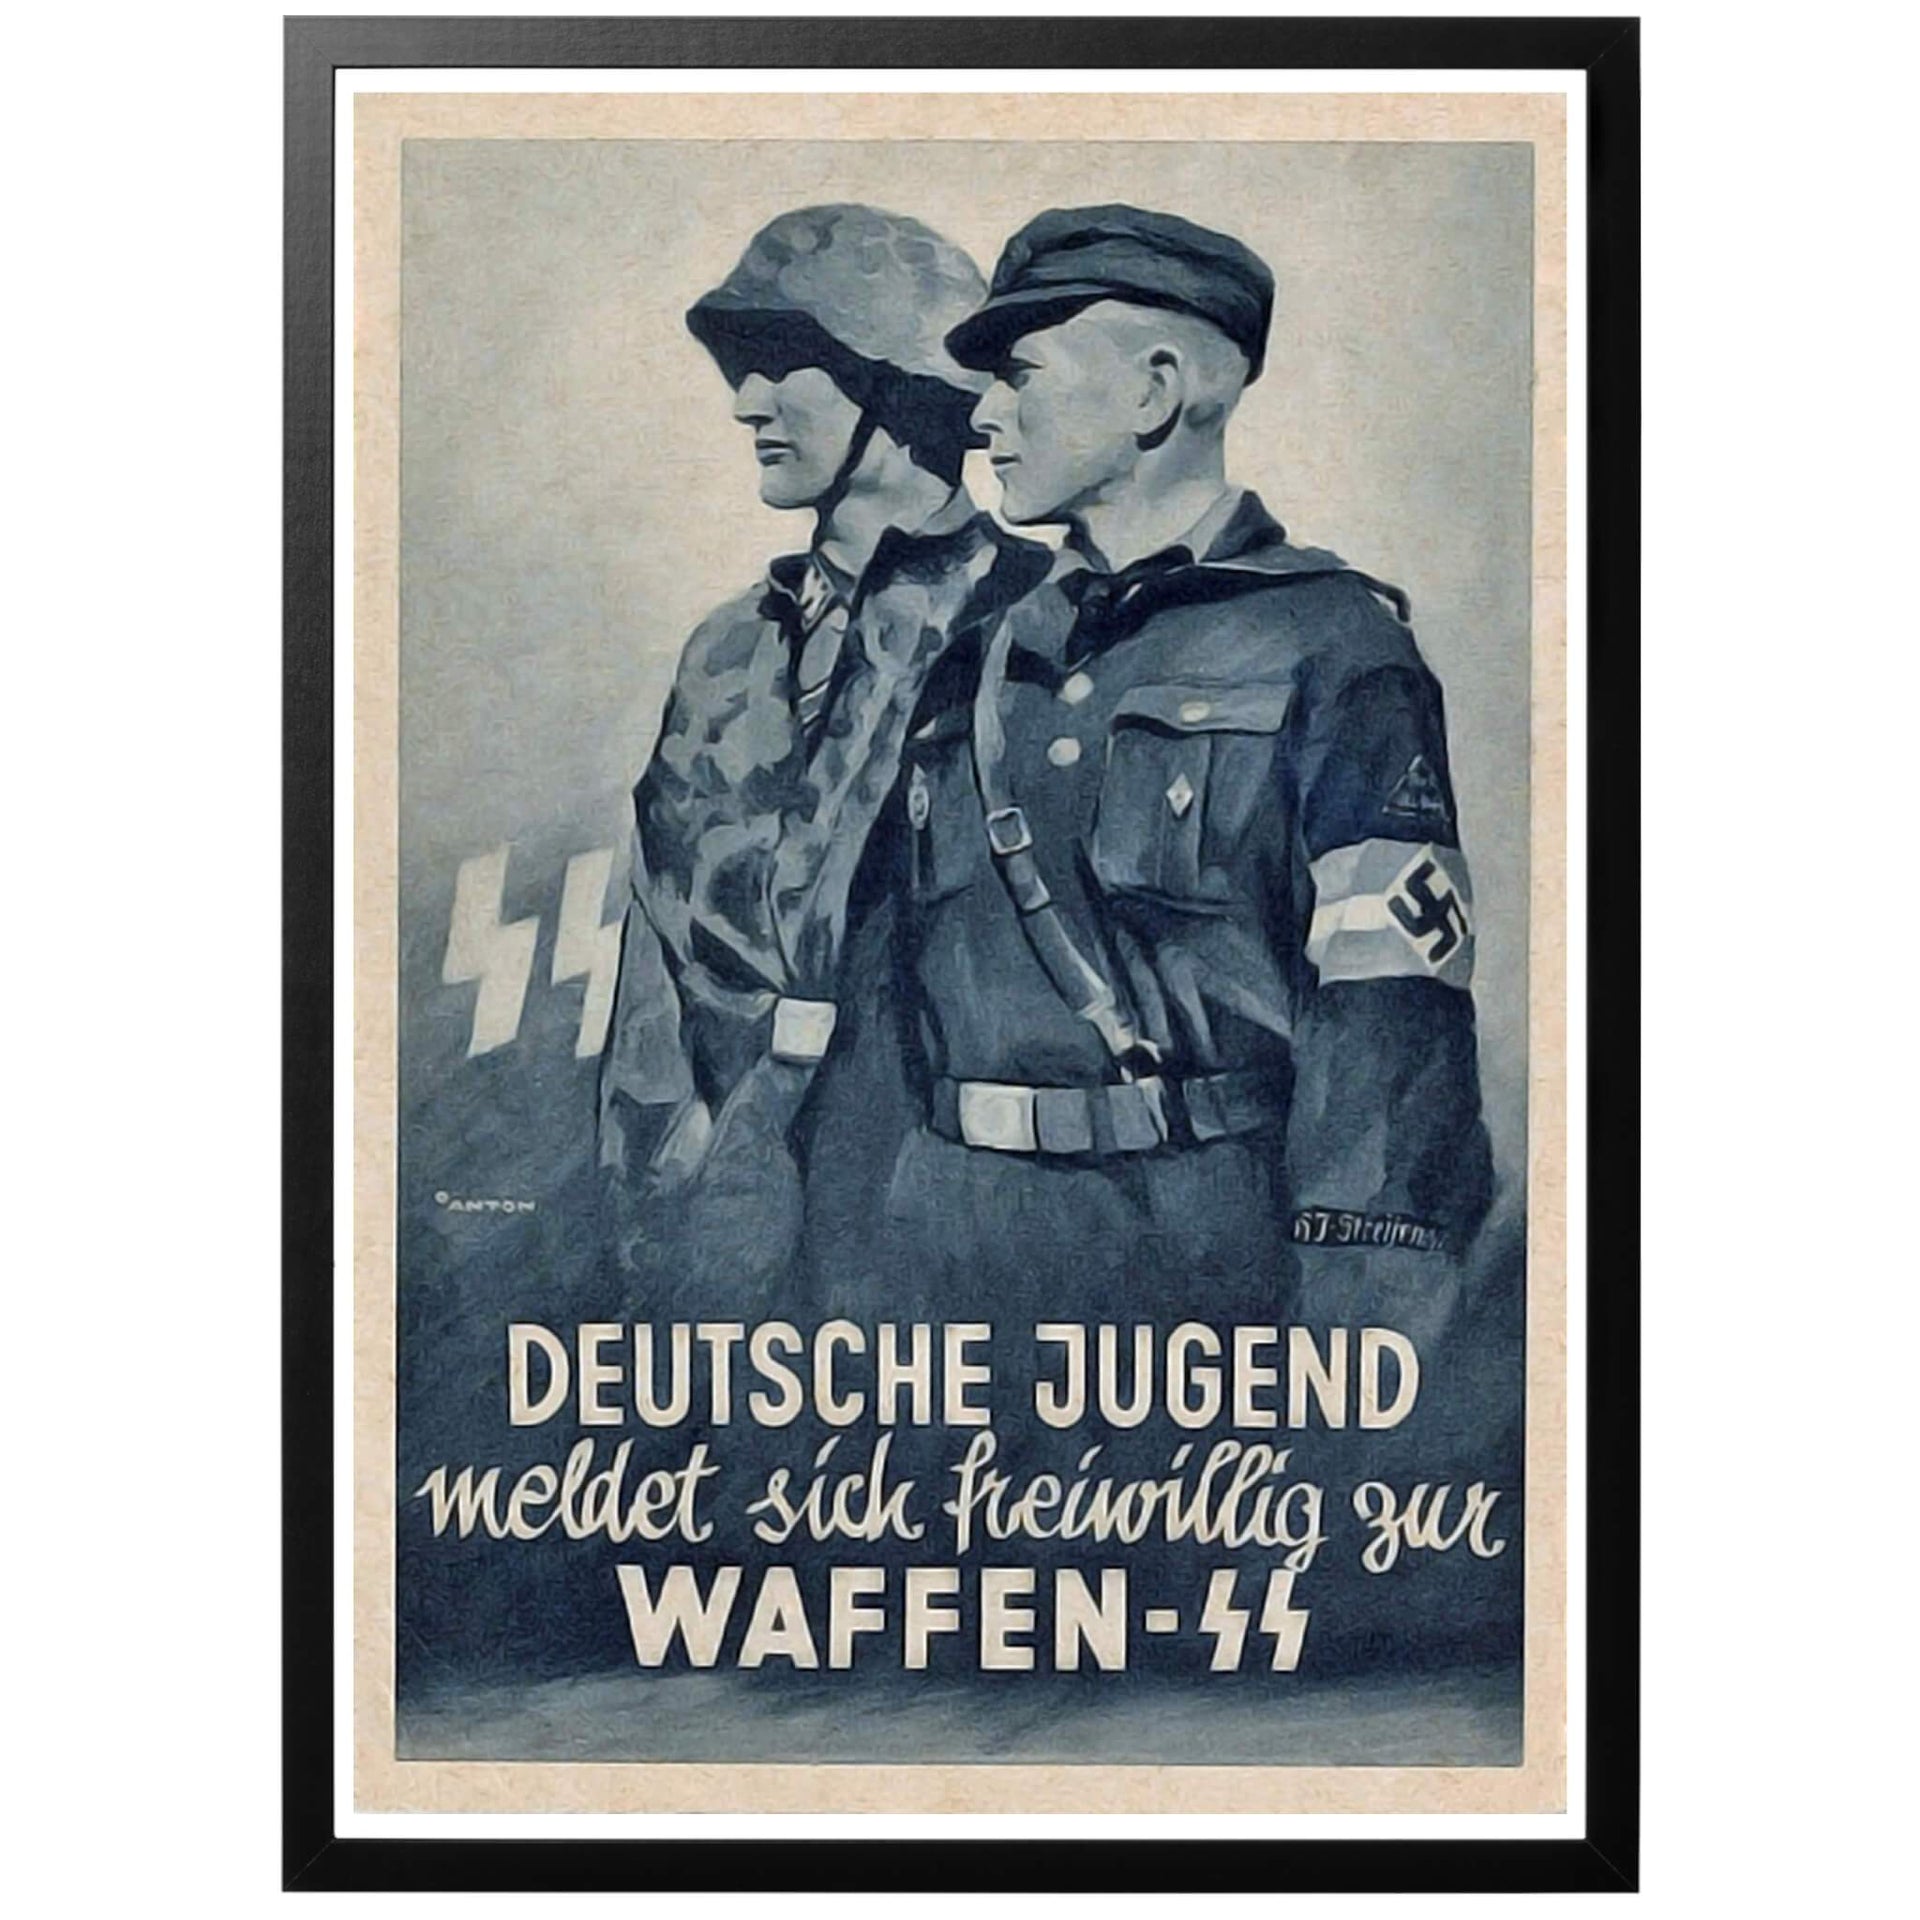 Deutsche Jugend meldet sich freiwillig zur Waffen SS Tyska ungdomar anmäl er frivilliga till Waffen SS - Tysk WWII rekryteringsaffisch för Waffen-SS, utgiven 1942. Skapad av välkände konstnären Ottomar Anton. Köp trycket här - vi trycker med den bästa utrustningen för bästa resultat!